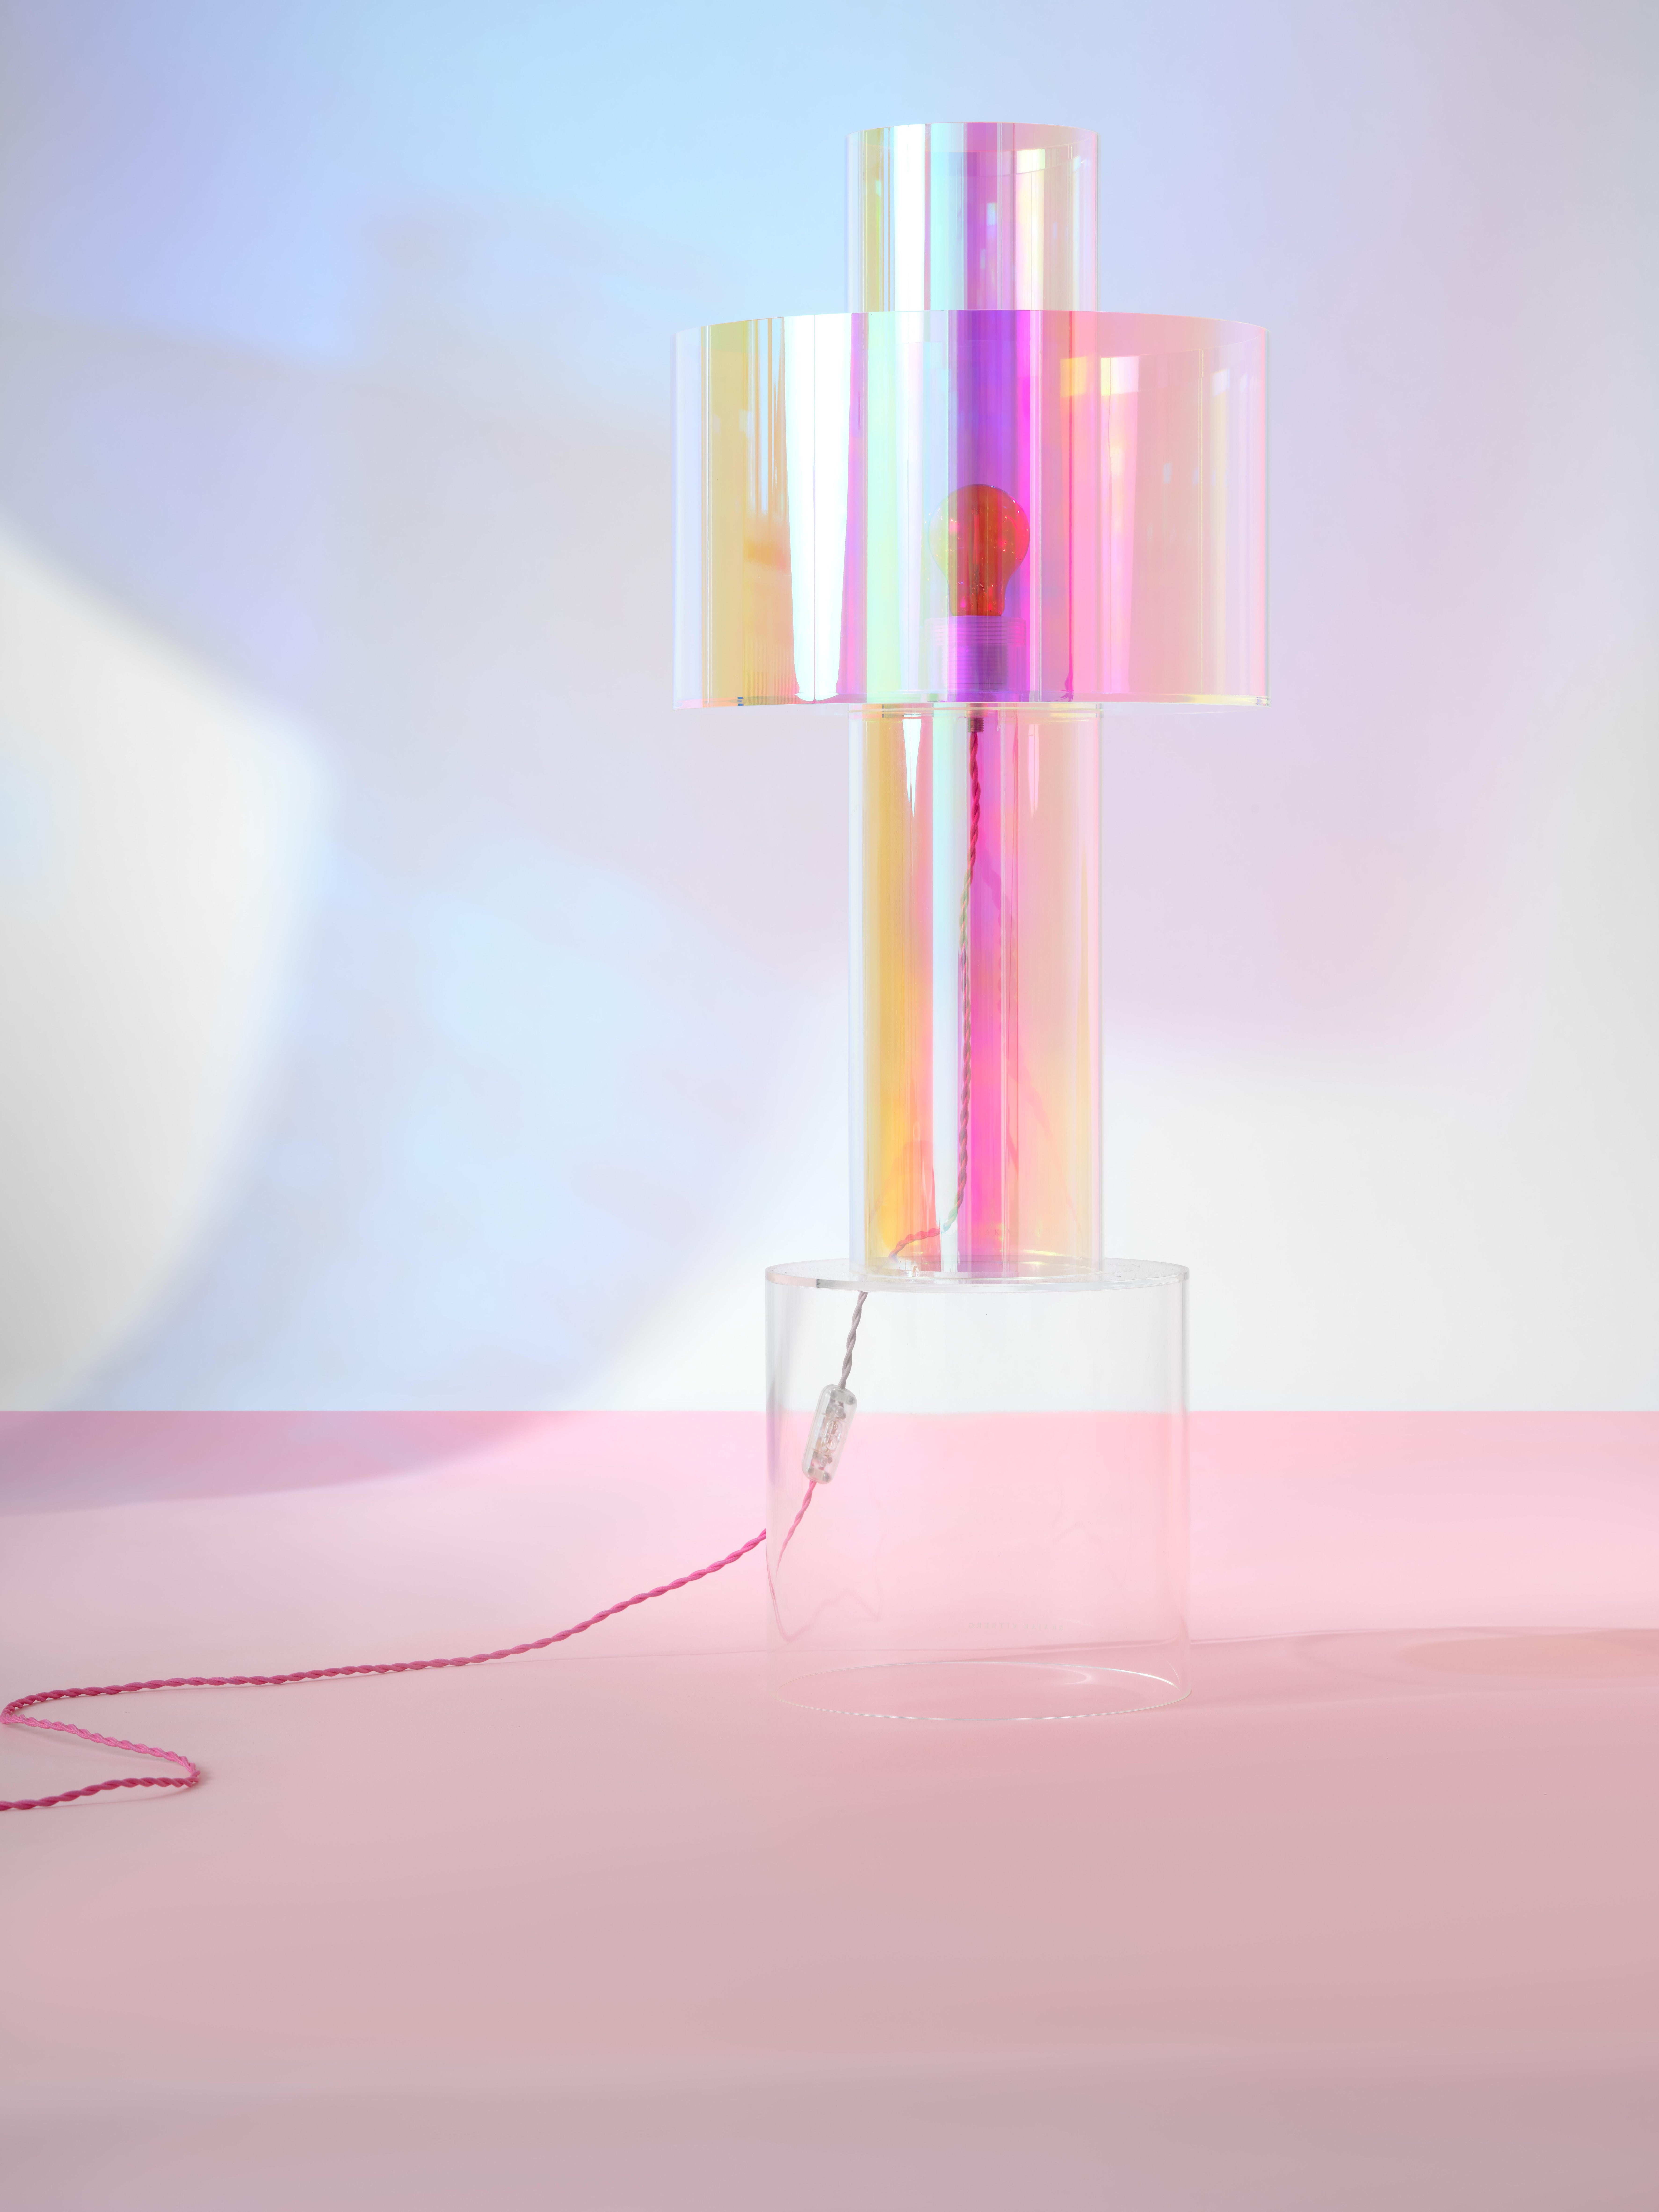 Lampe de bureau flottante rose Miami par Brajak Vitberg
MATERIAL : Plexiglas et film dichroïque.
Dimensions : Ø 35 x H 44 cm : Ø 35 x H 44 cm.

Lampe de table disponible avec abat-jour en couleur dichroïque rose/bleu et base transparente. Également